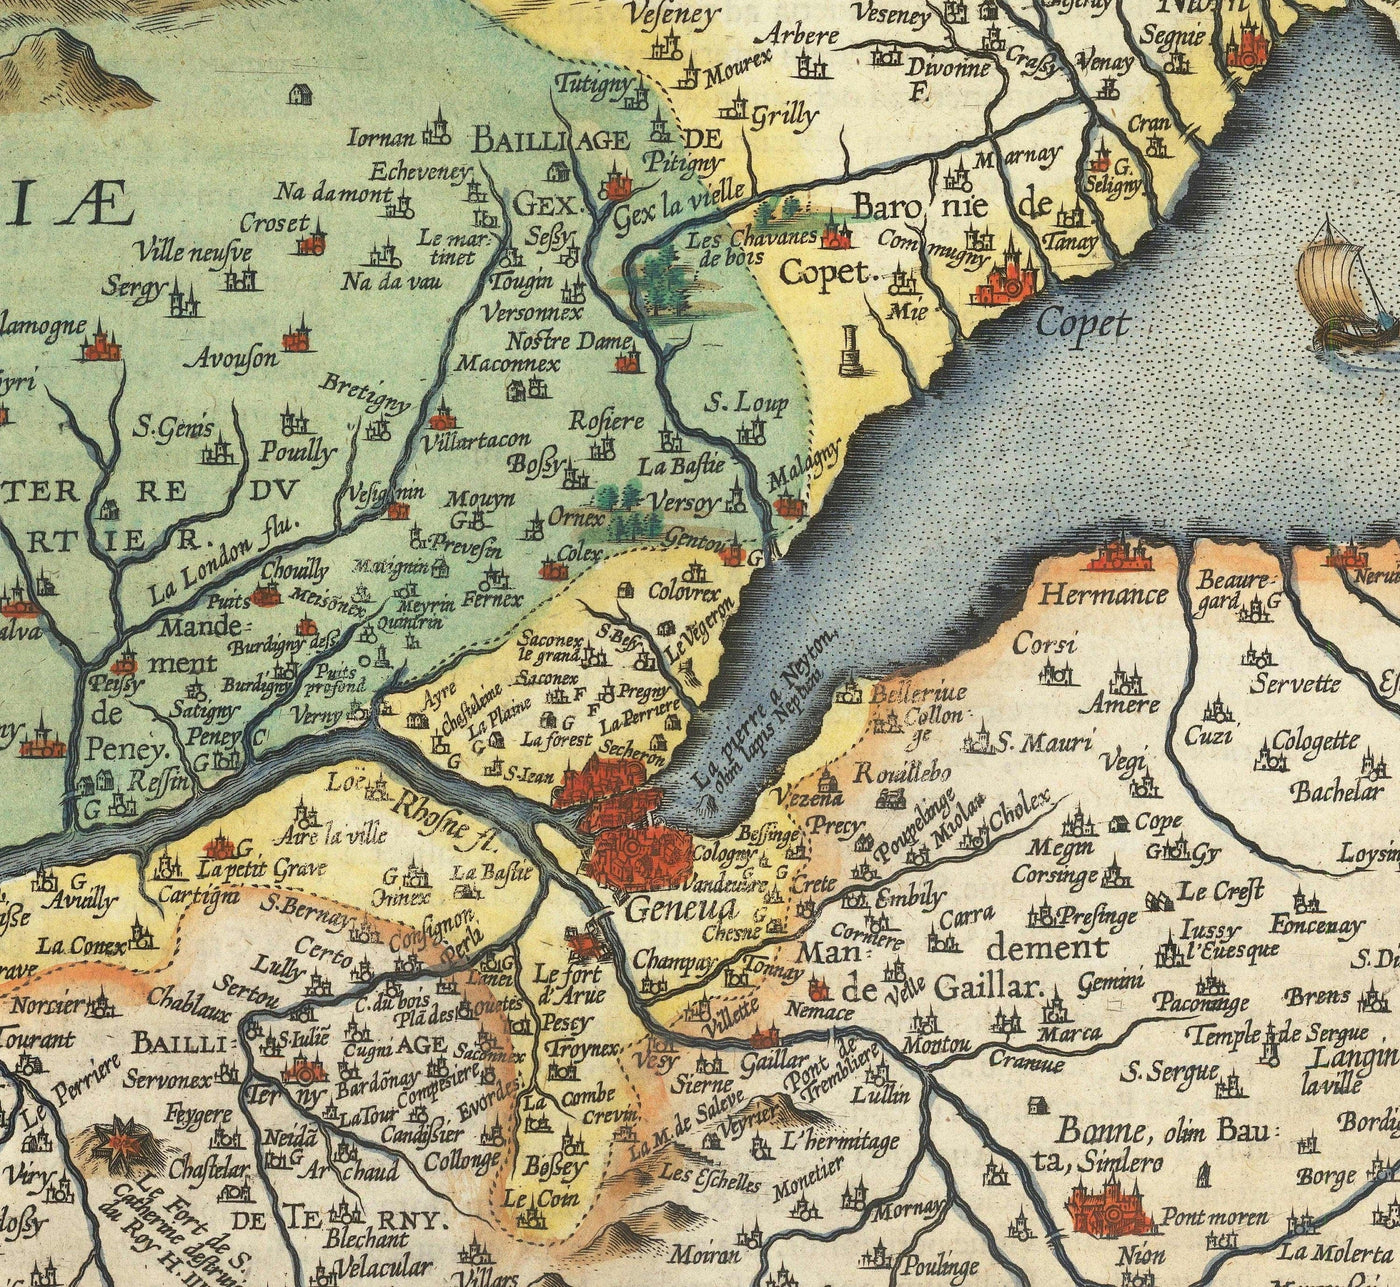 Alte Karte des Genfersees von Abraham Ortelius, 1573 - Lausanne, Montreux, Thonon-les-Bains, Evian, Nyon, Morges